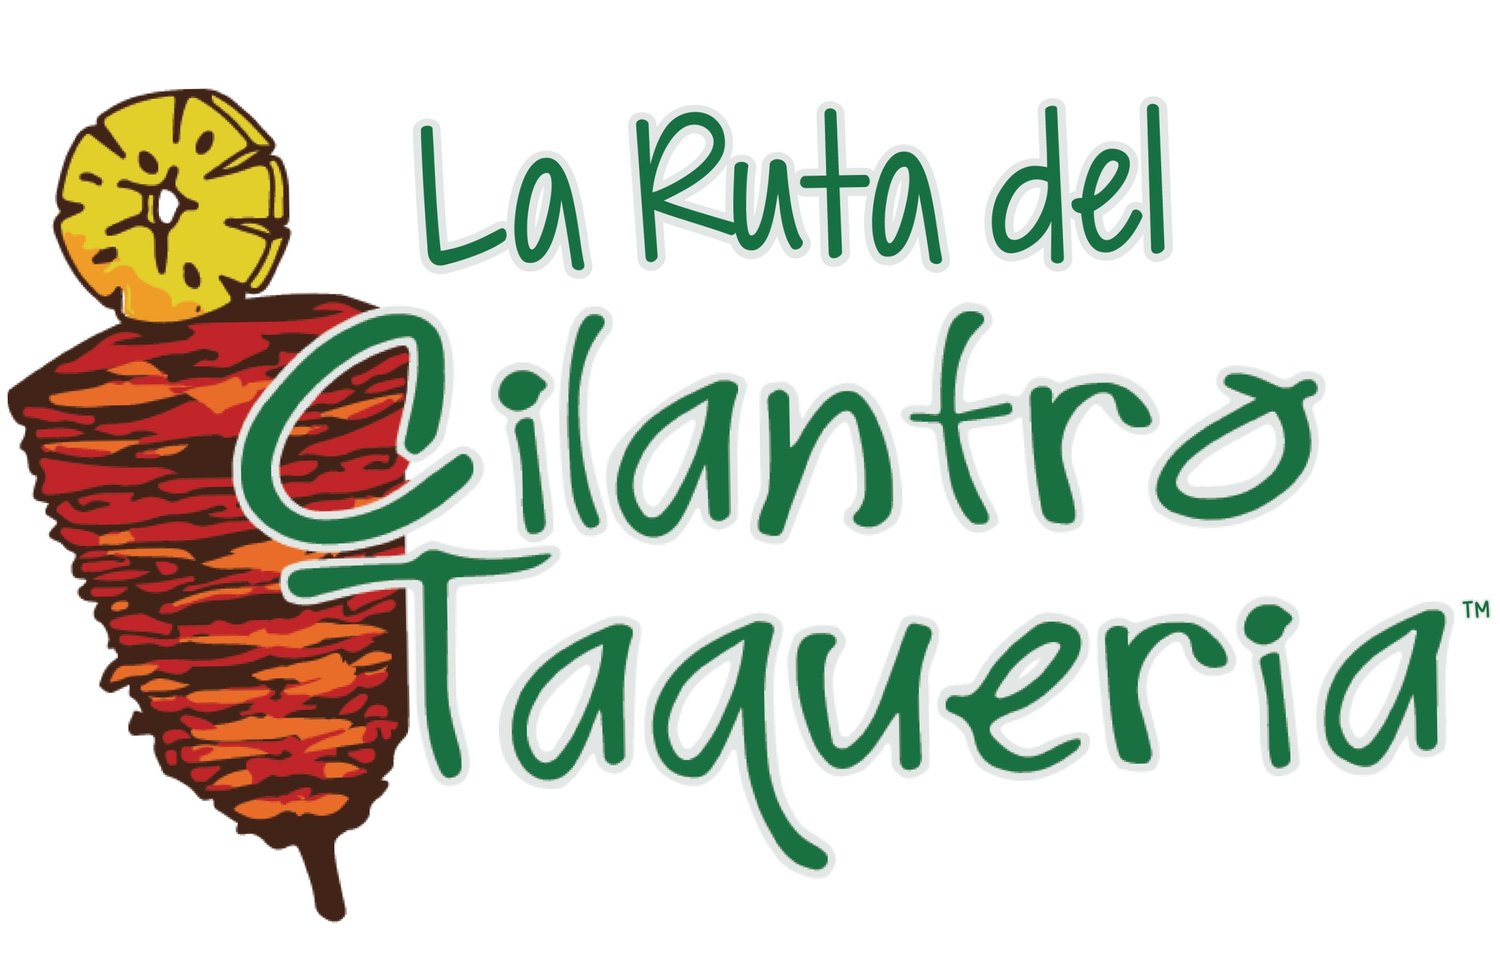 La Ruta del Cilantro Taqueria - Mexican Tacos - Cleveland, OH